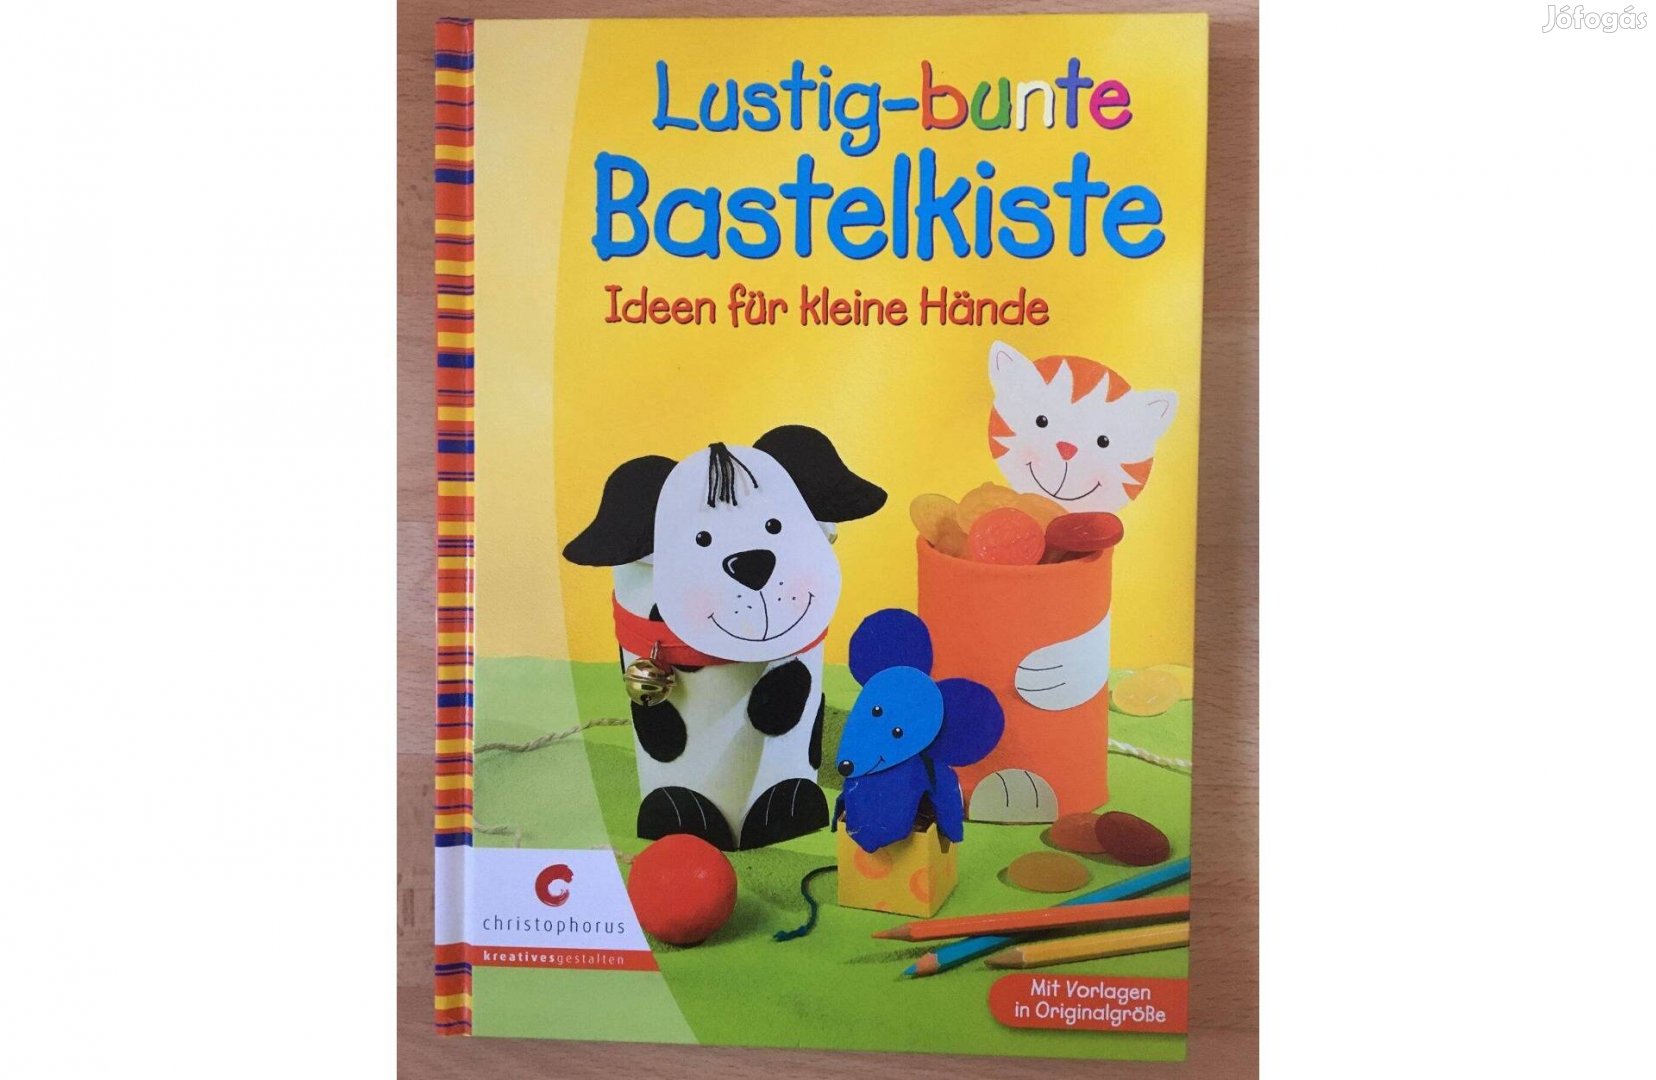 Lustig-bunte Bastelkiste című német nyelvű barkácskönyv